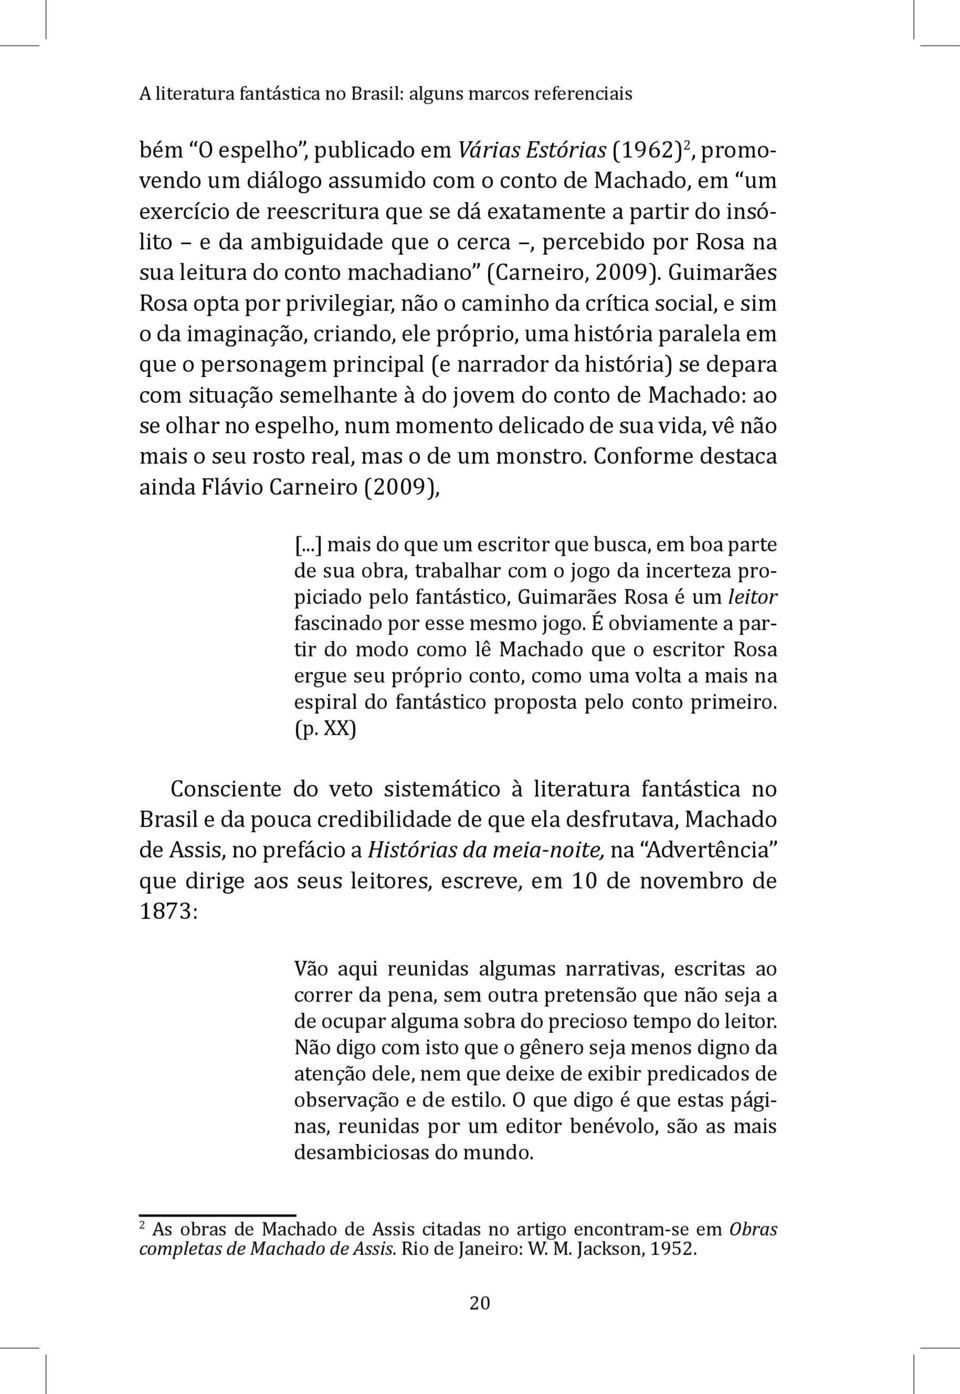 Guimarães Rosa opta por privilegiar, não o caminho da crítica social, e sim o da imaginação, criando, ele próprio, uma história paralela em que o personagem principal (e narrador da história) se